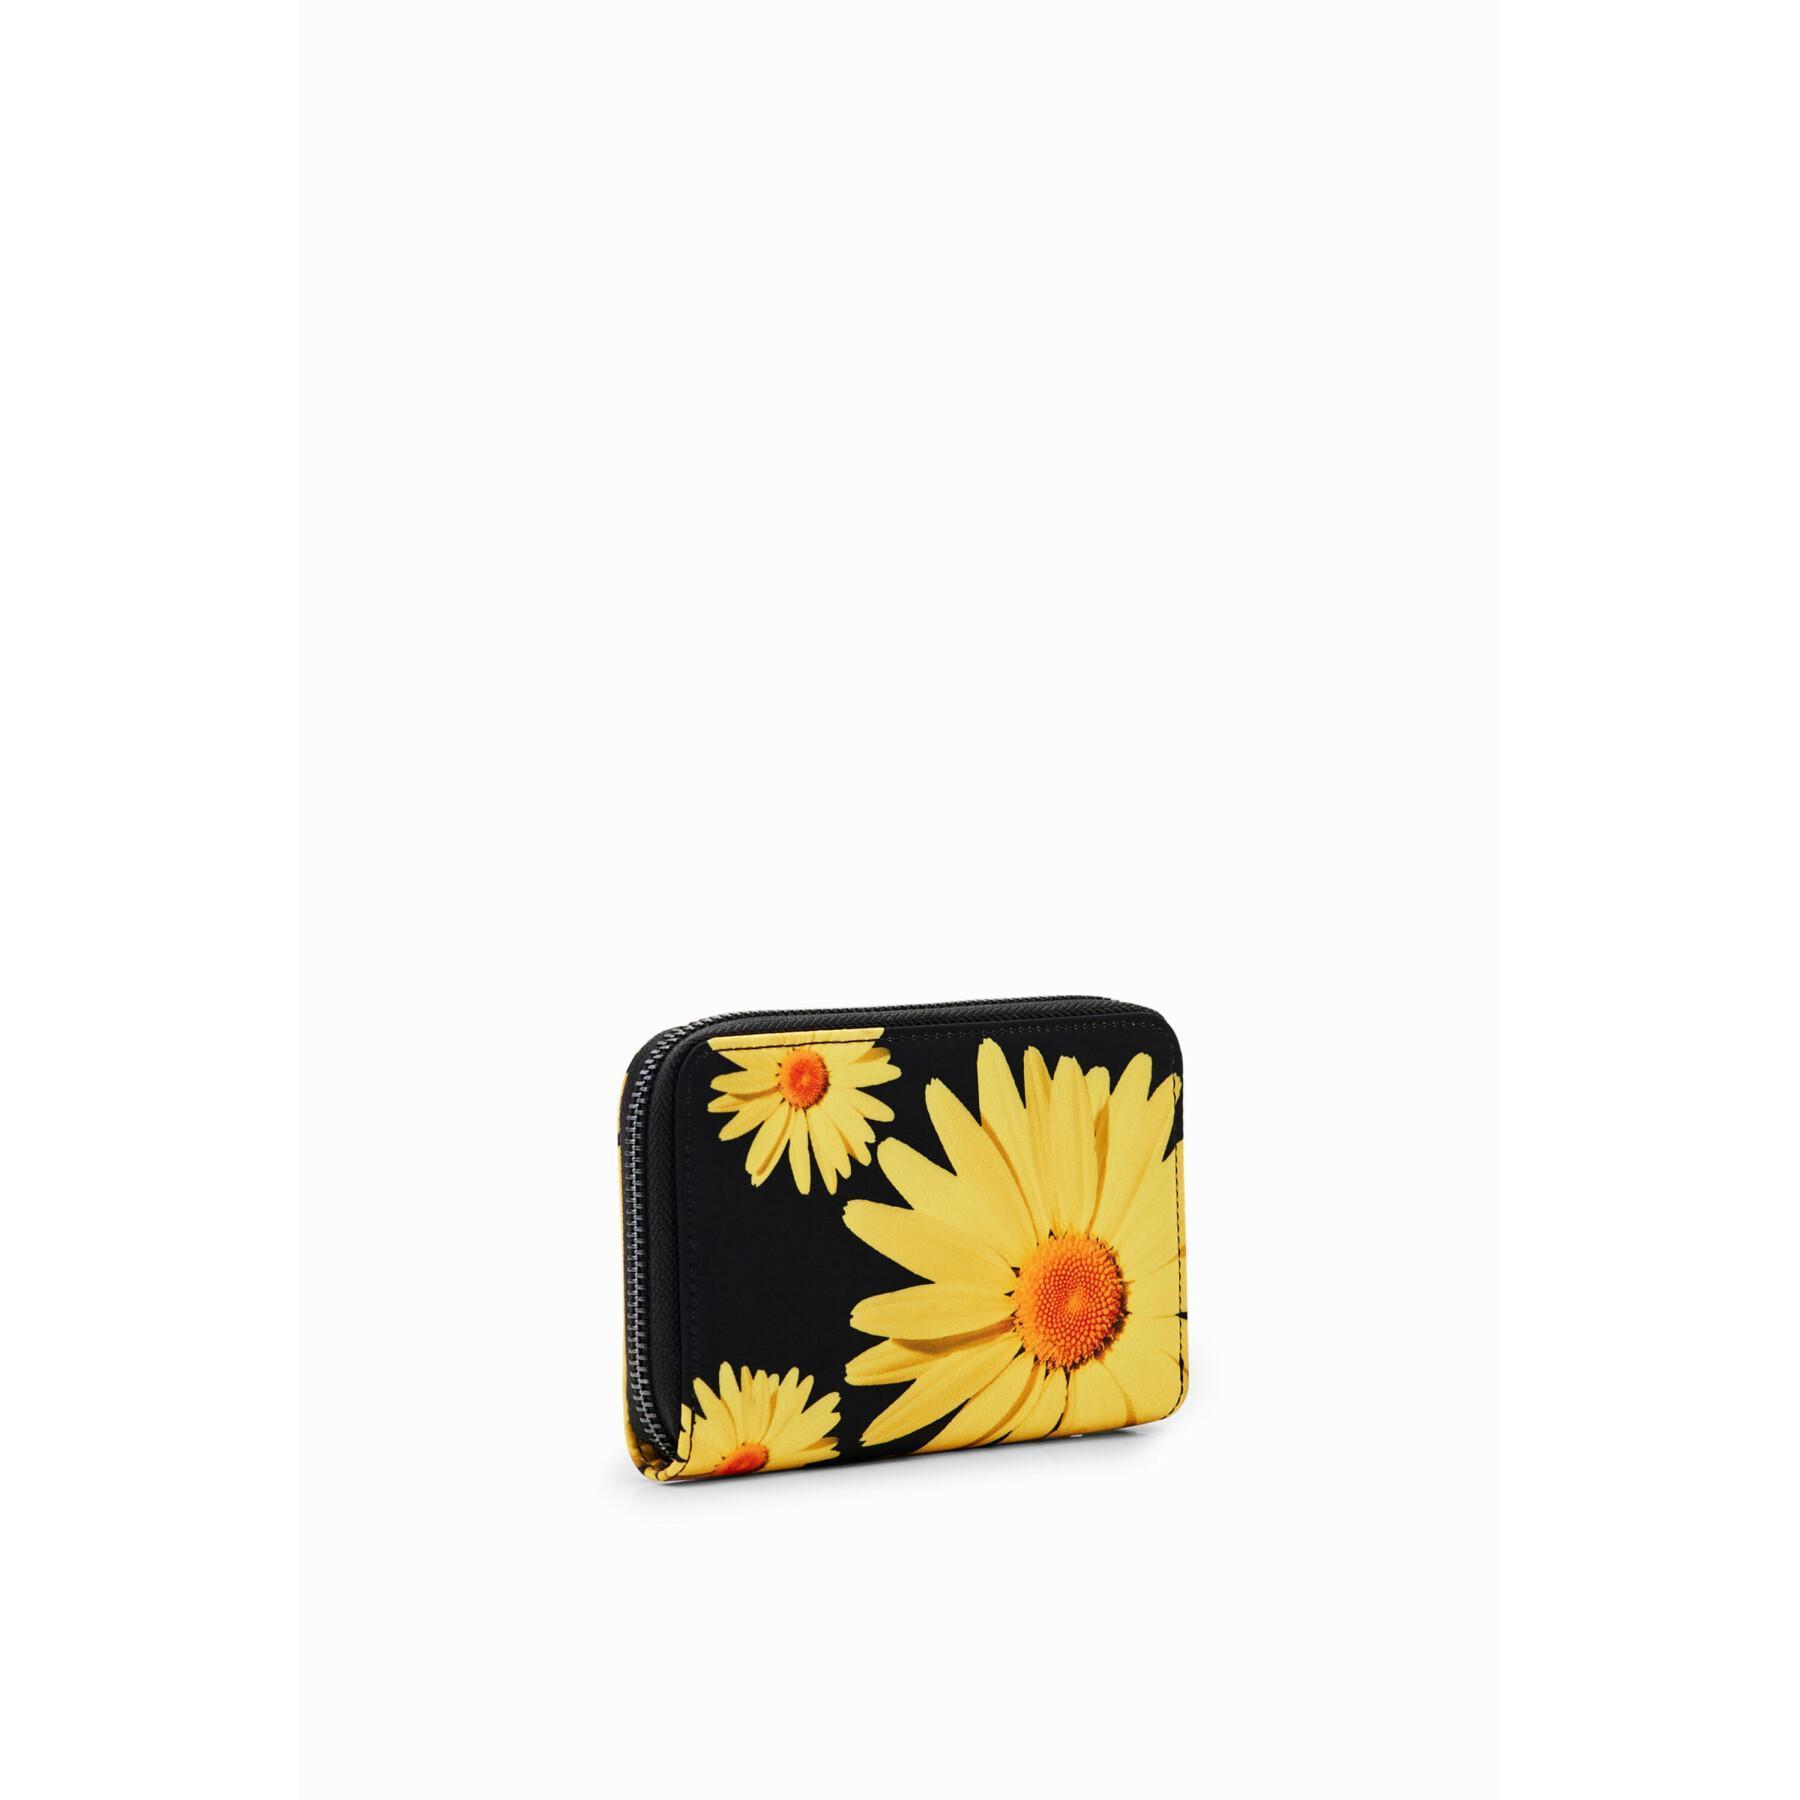 Floral wallet for women Desigual M. Christian Lacroix